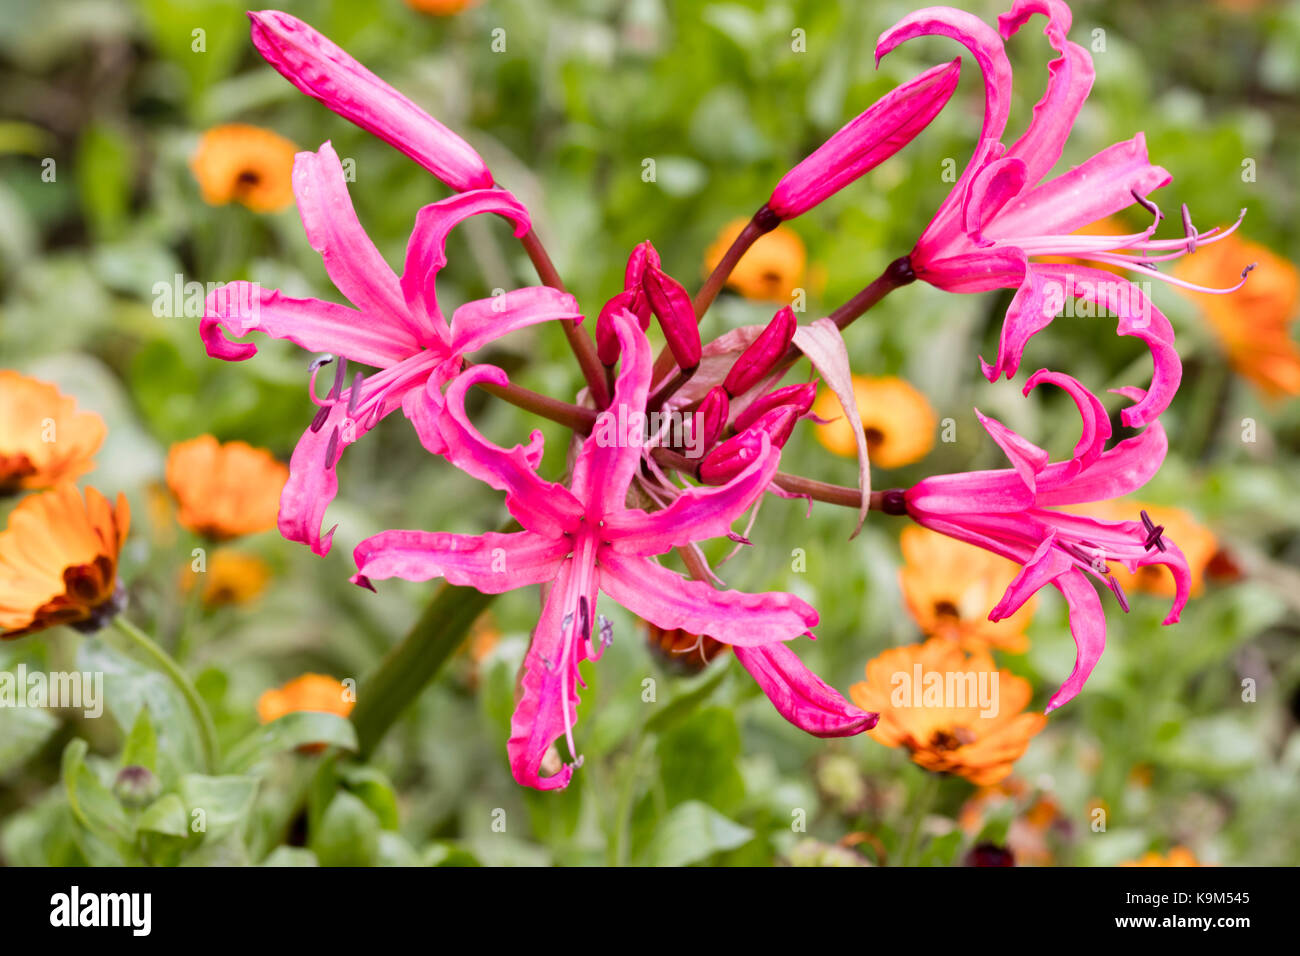 Blumen Der winterharte Südafrikanischen Glühlampe hybrid, "Nerine" Eifer" lila Streifen' Stockfoto